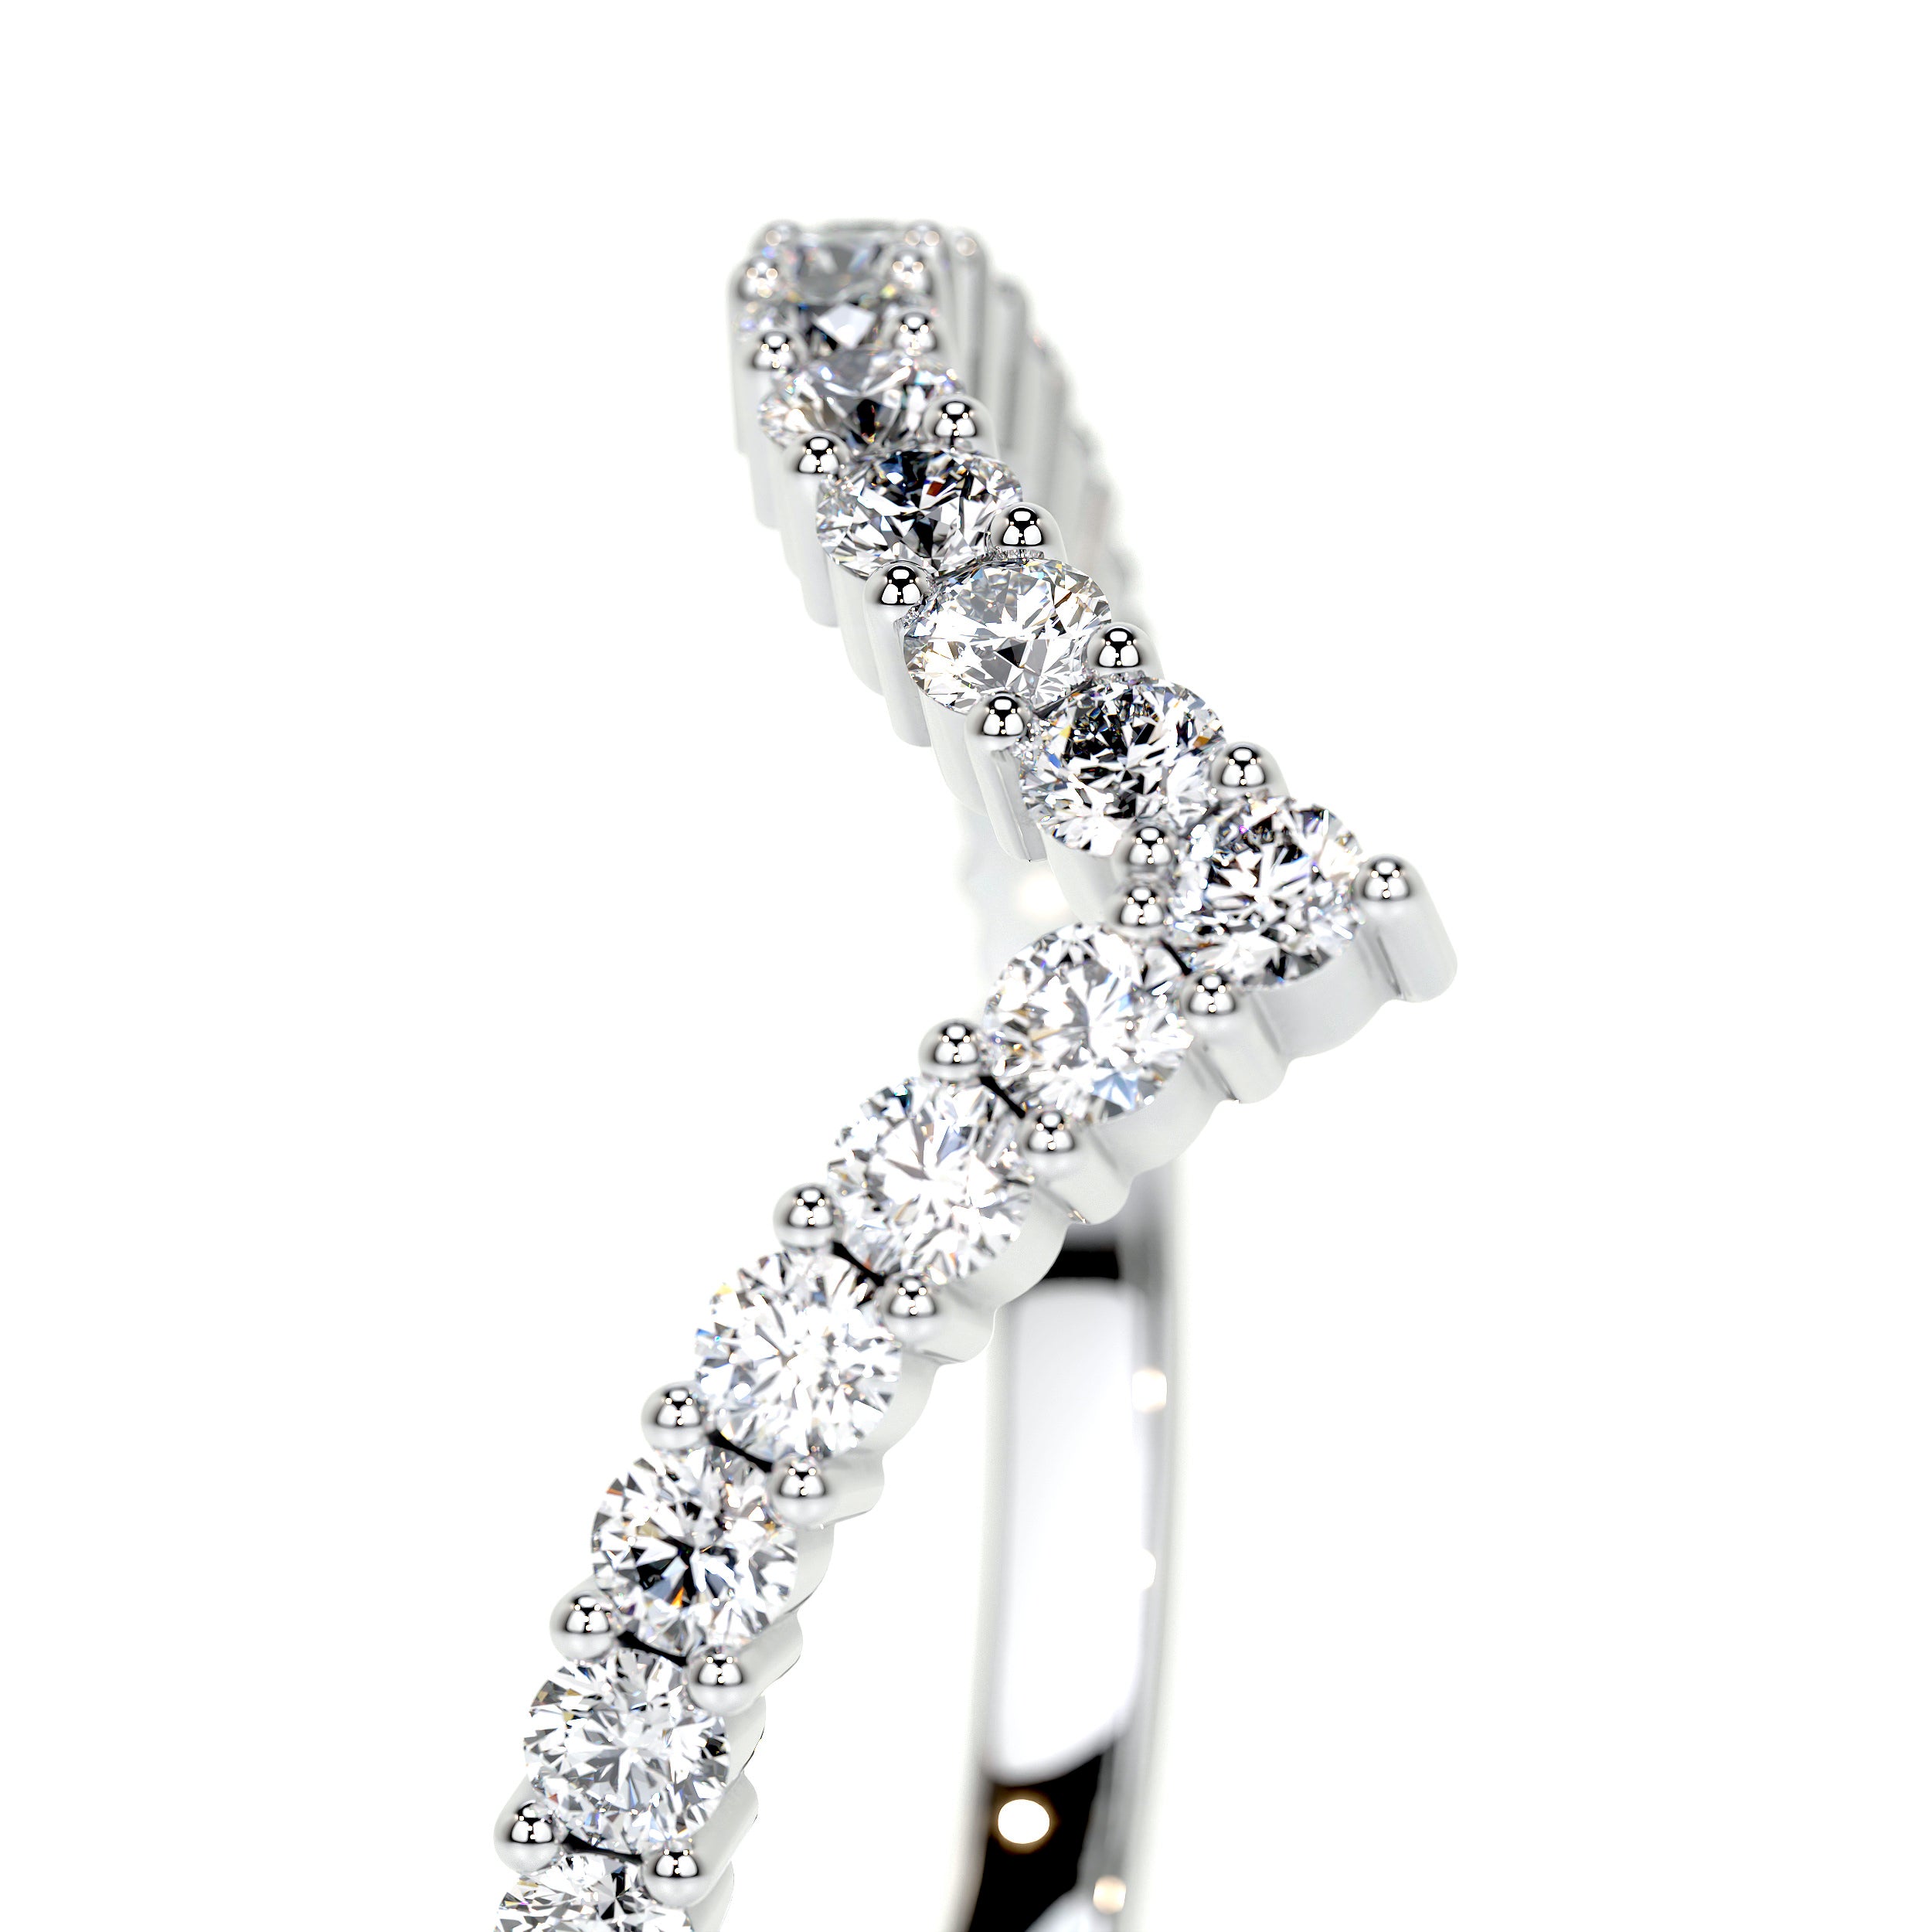 Dawn Lab Grown Diamond Wedding Ring   (0.50 Carat) -14K White Gold